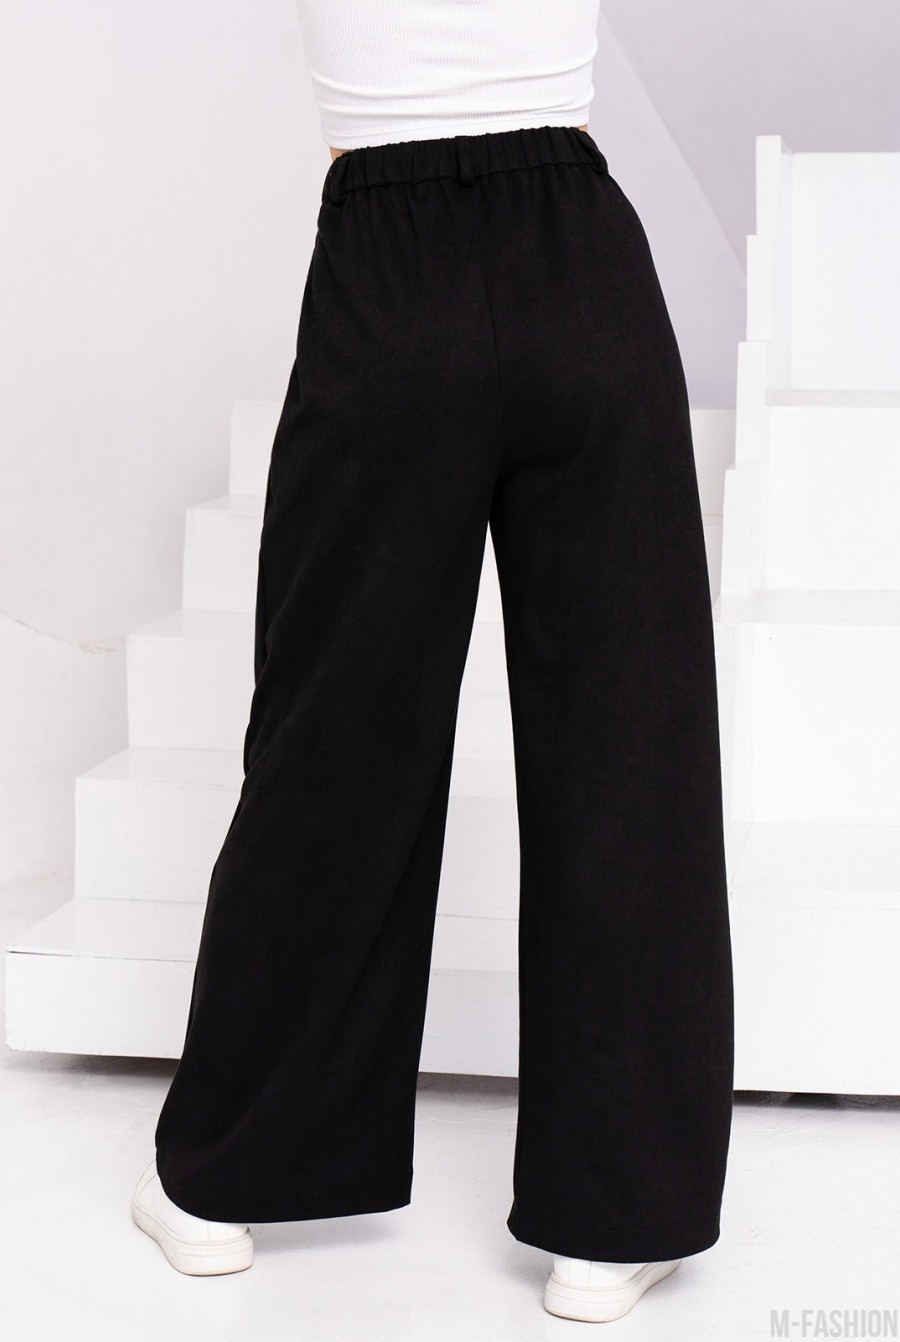 Черные свободные брюки палаццо из эко-замши - Фото 3